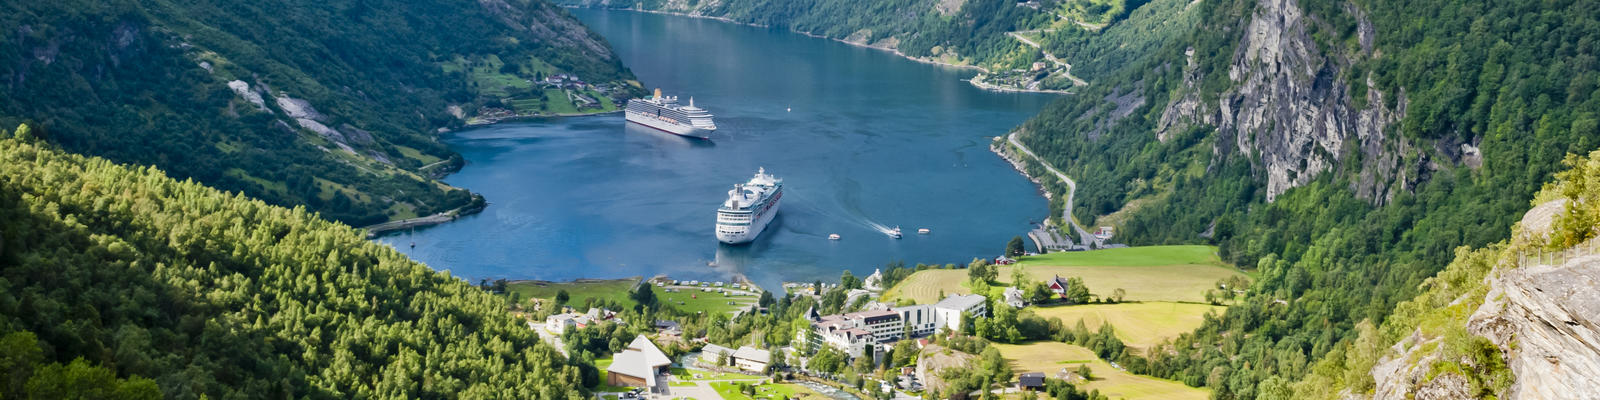 royal caribbean norwegian fjords cruise review